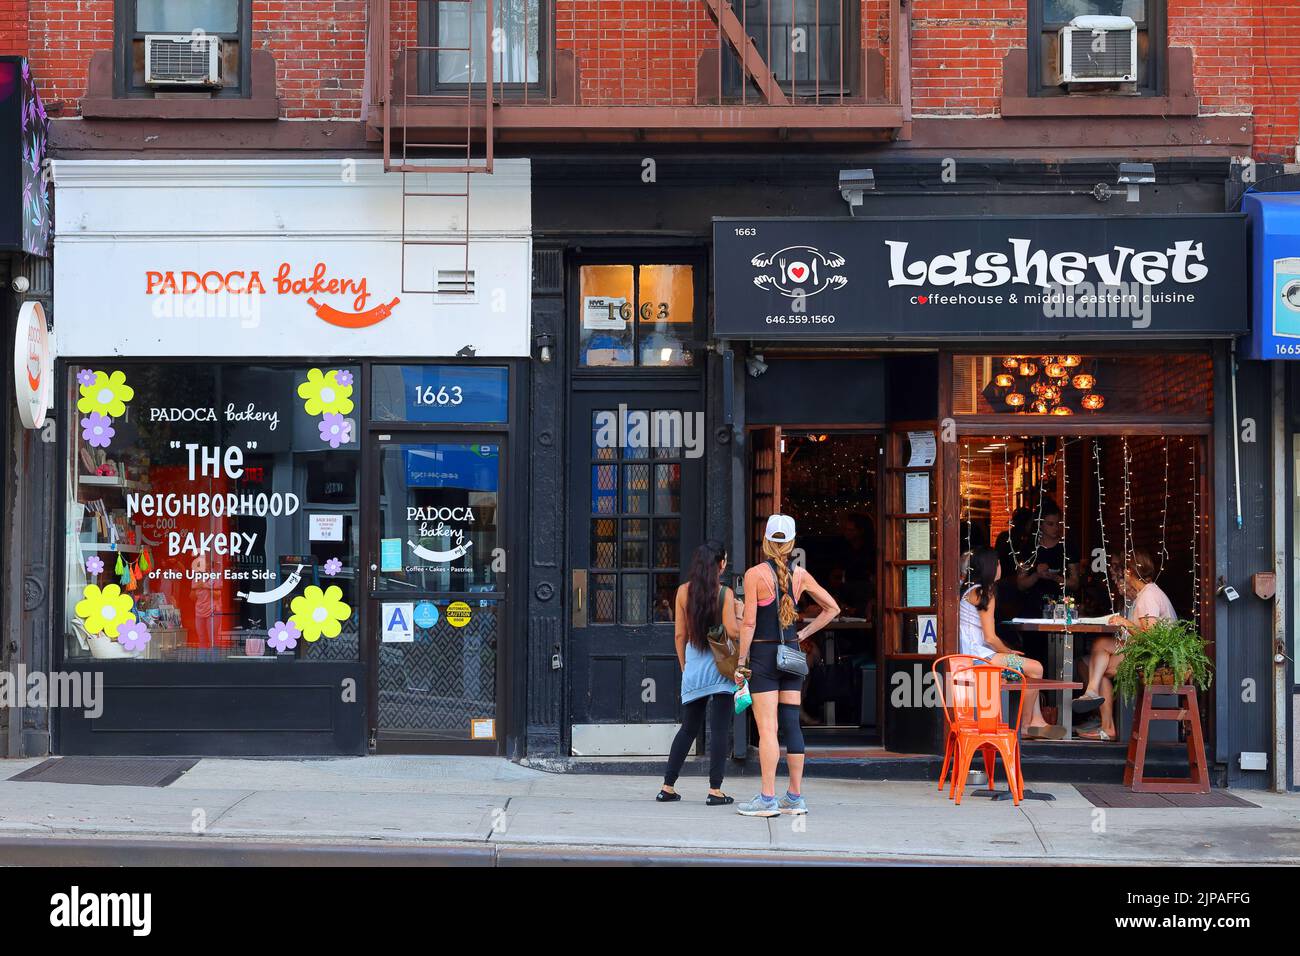 Padoca Bakery, Lashevet, 1663 1st Ave, Nueva York, Nueva York, Nueva York, foto de una panadería brasileña y un café de Oriente Medio en el Upper East Side de Manhattan Foto de stock